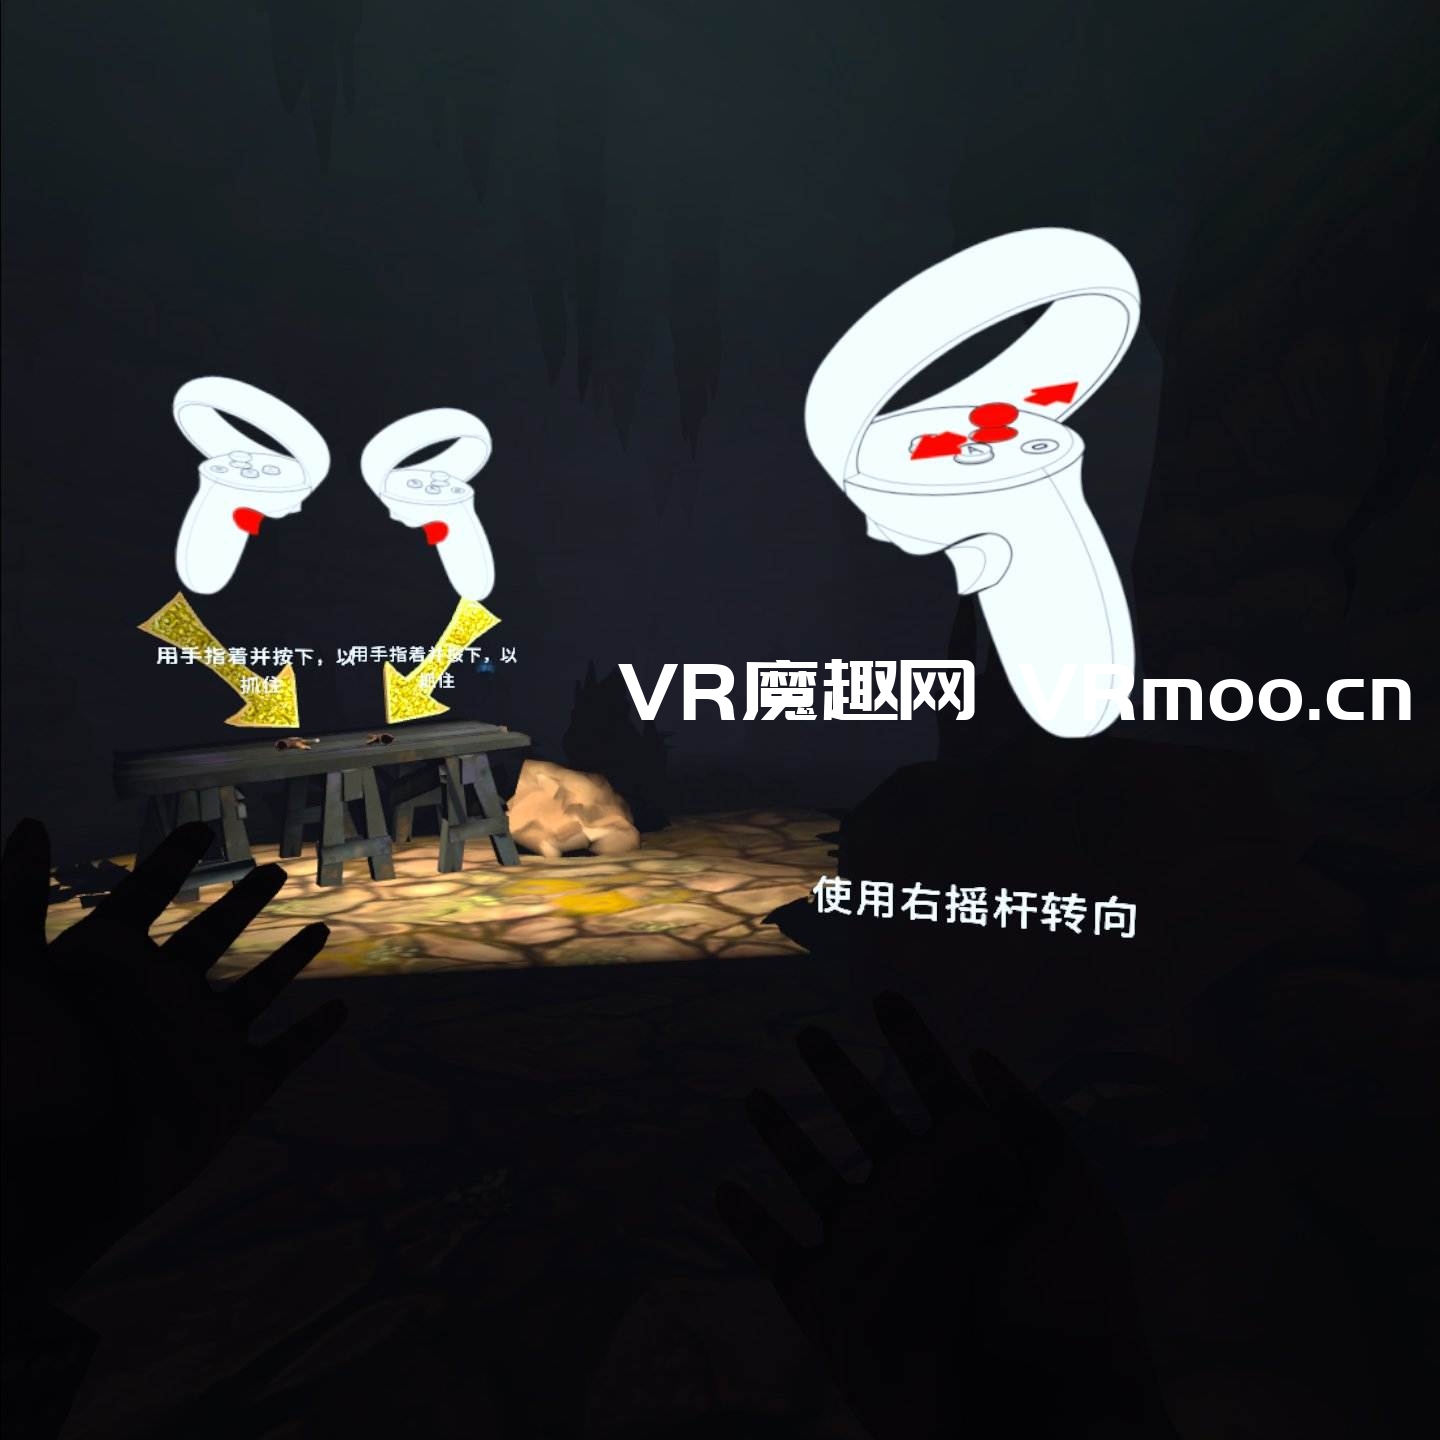 Oculus Quest 游戏《Cave Digger 2: Dig Harder 汉化中文版》挖洞者2：用力挖